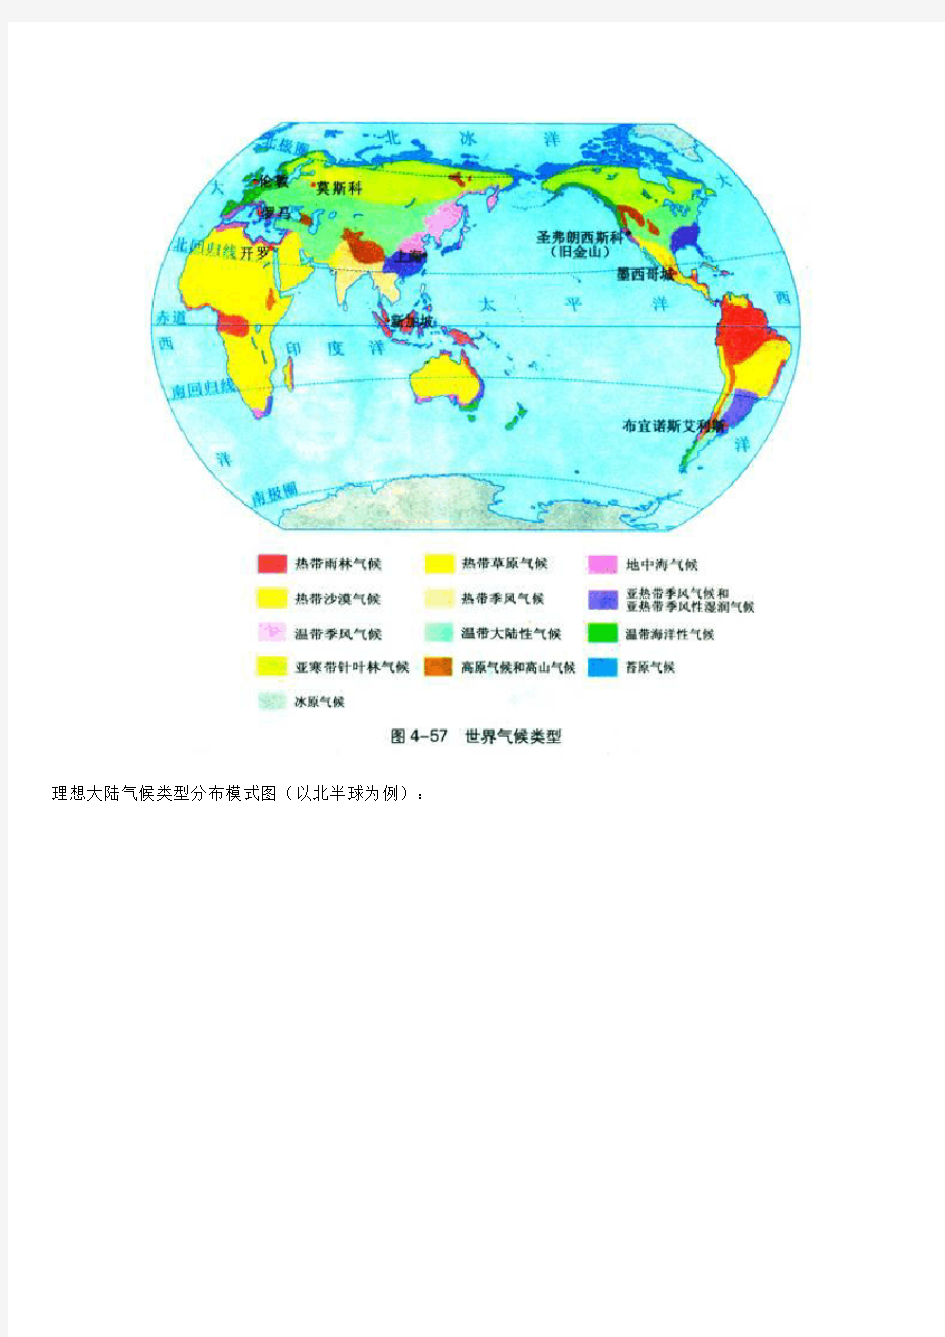 理想大陆气候类型分布模式图